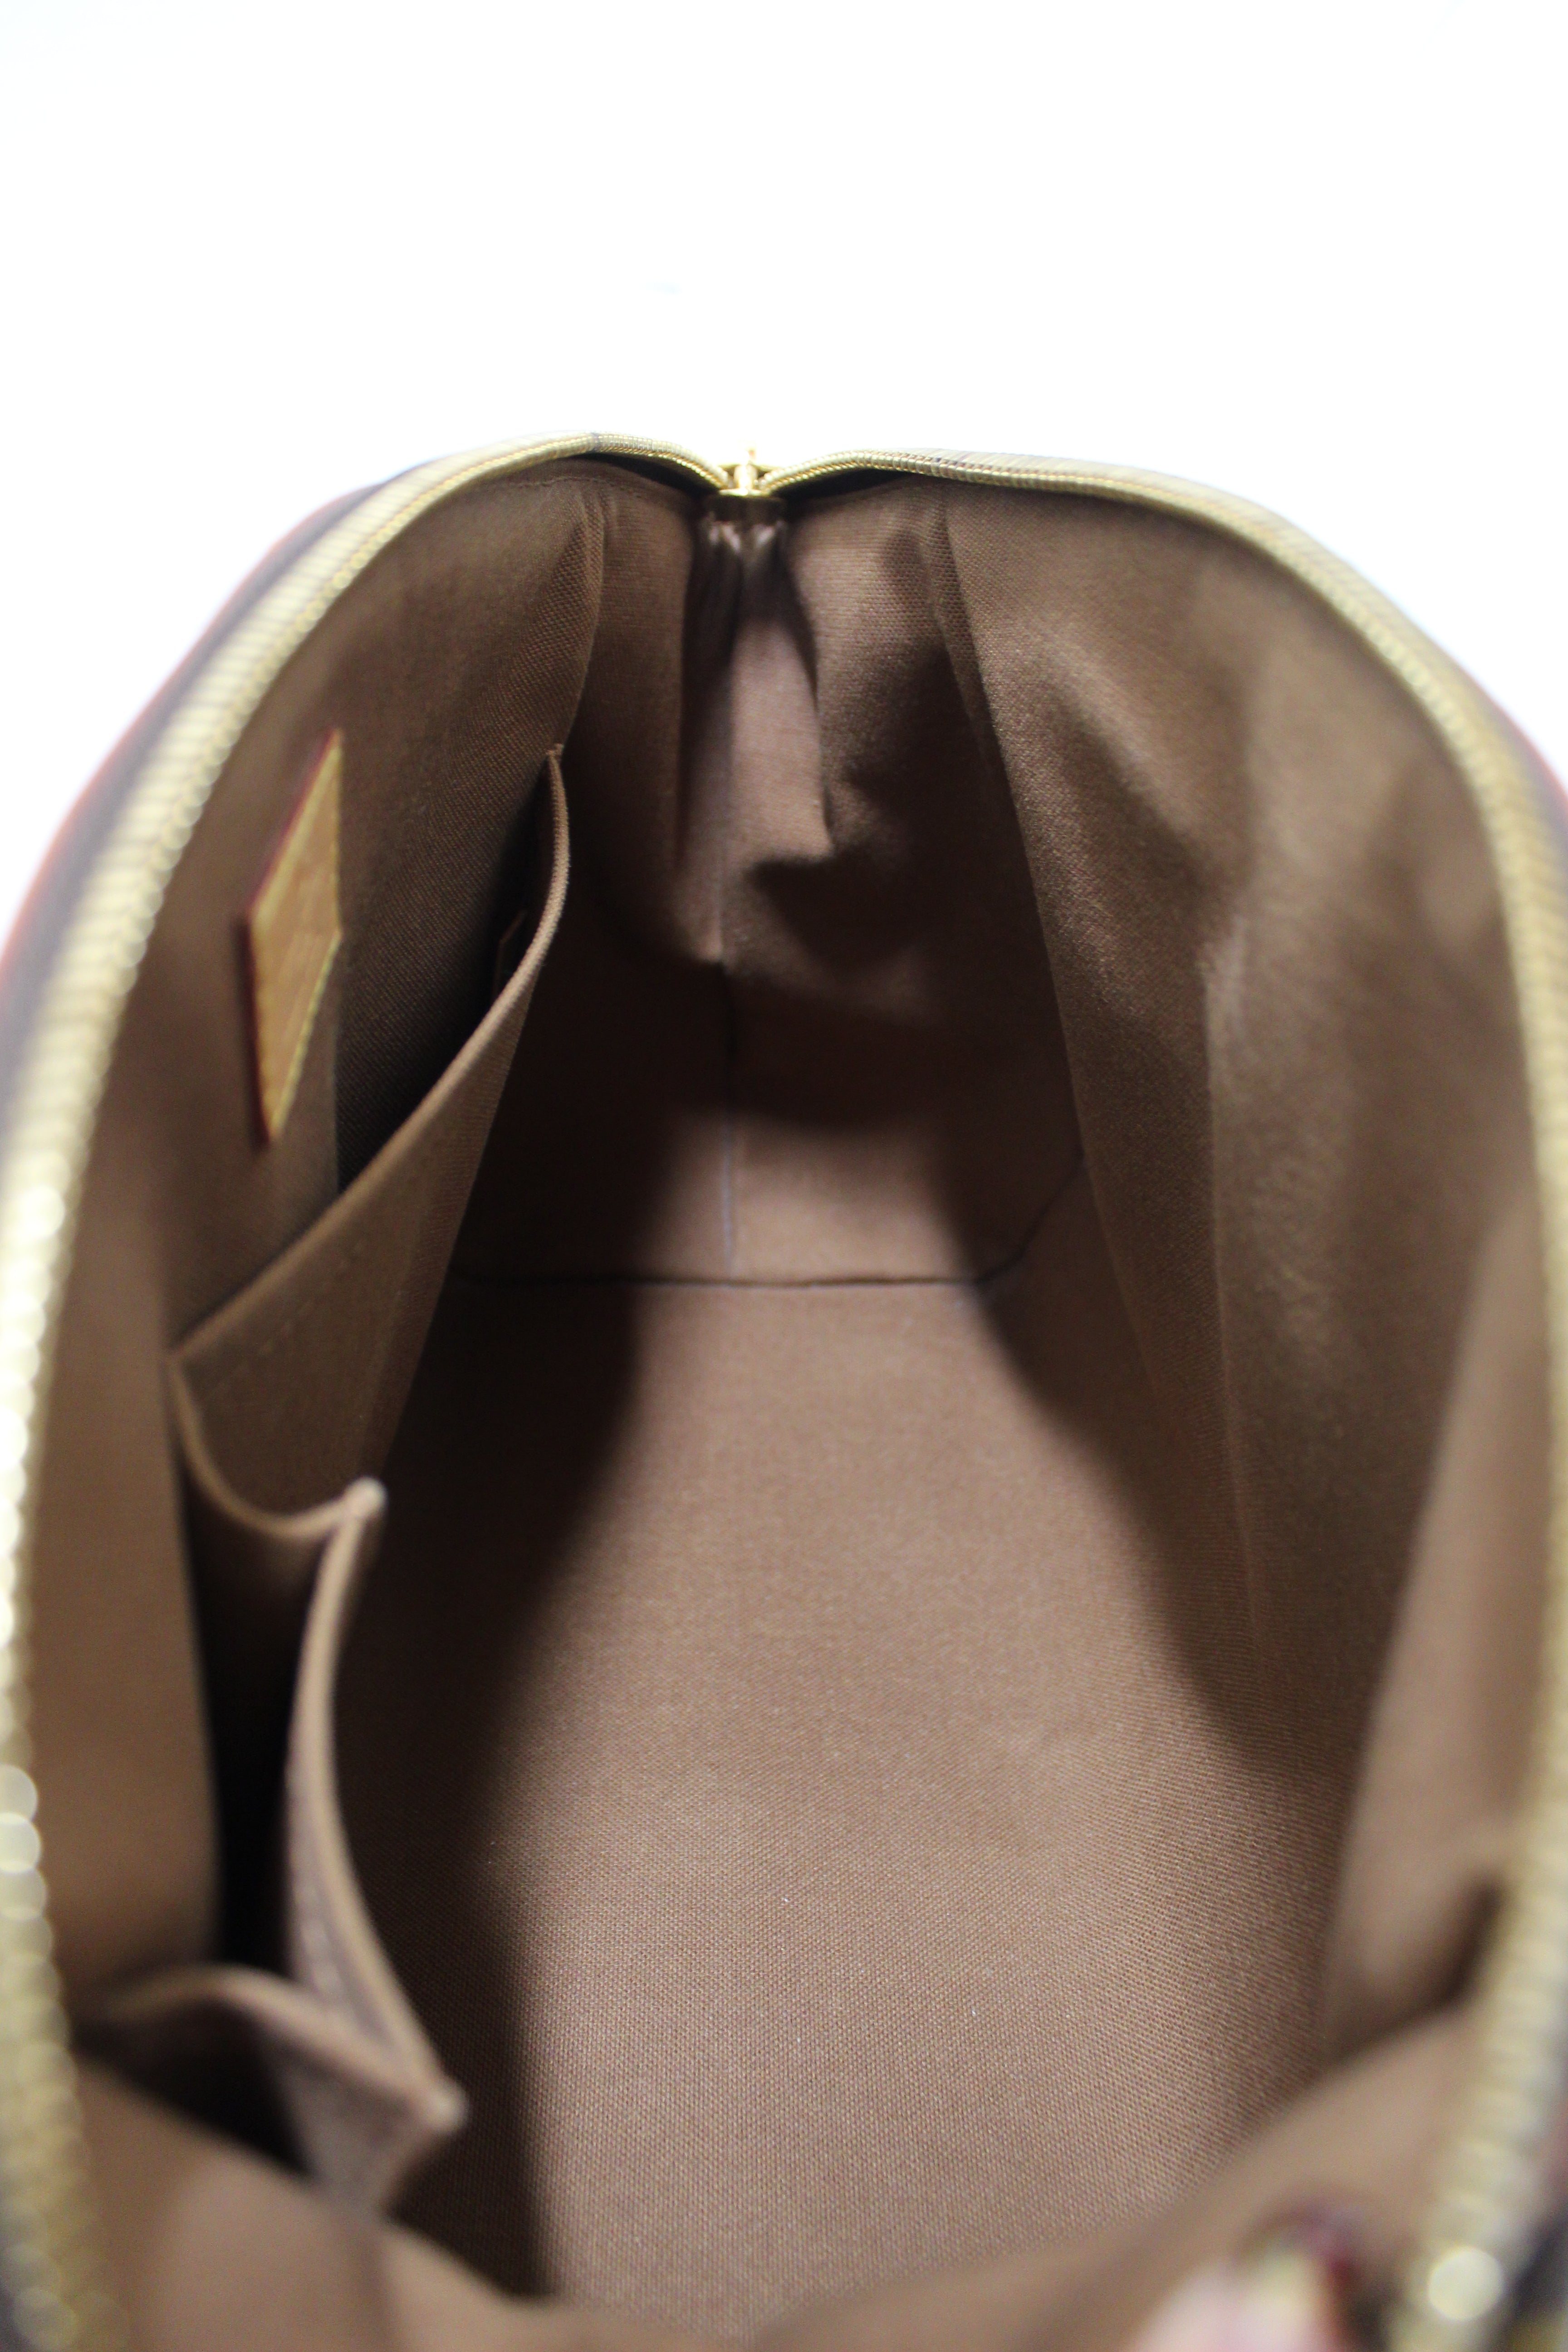 Louis Vuitton Monogram Canvas Tivoli Pm (Authentic Pre-Owned) - ShopStyle  Shoulder Bags